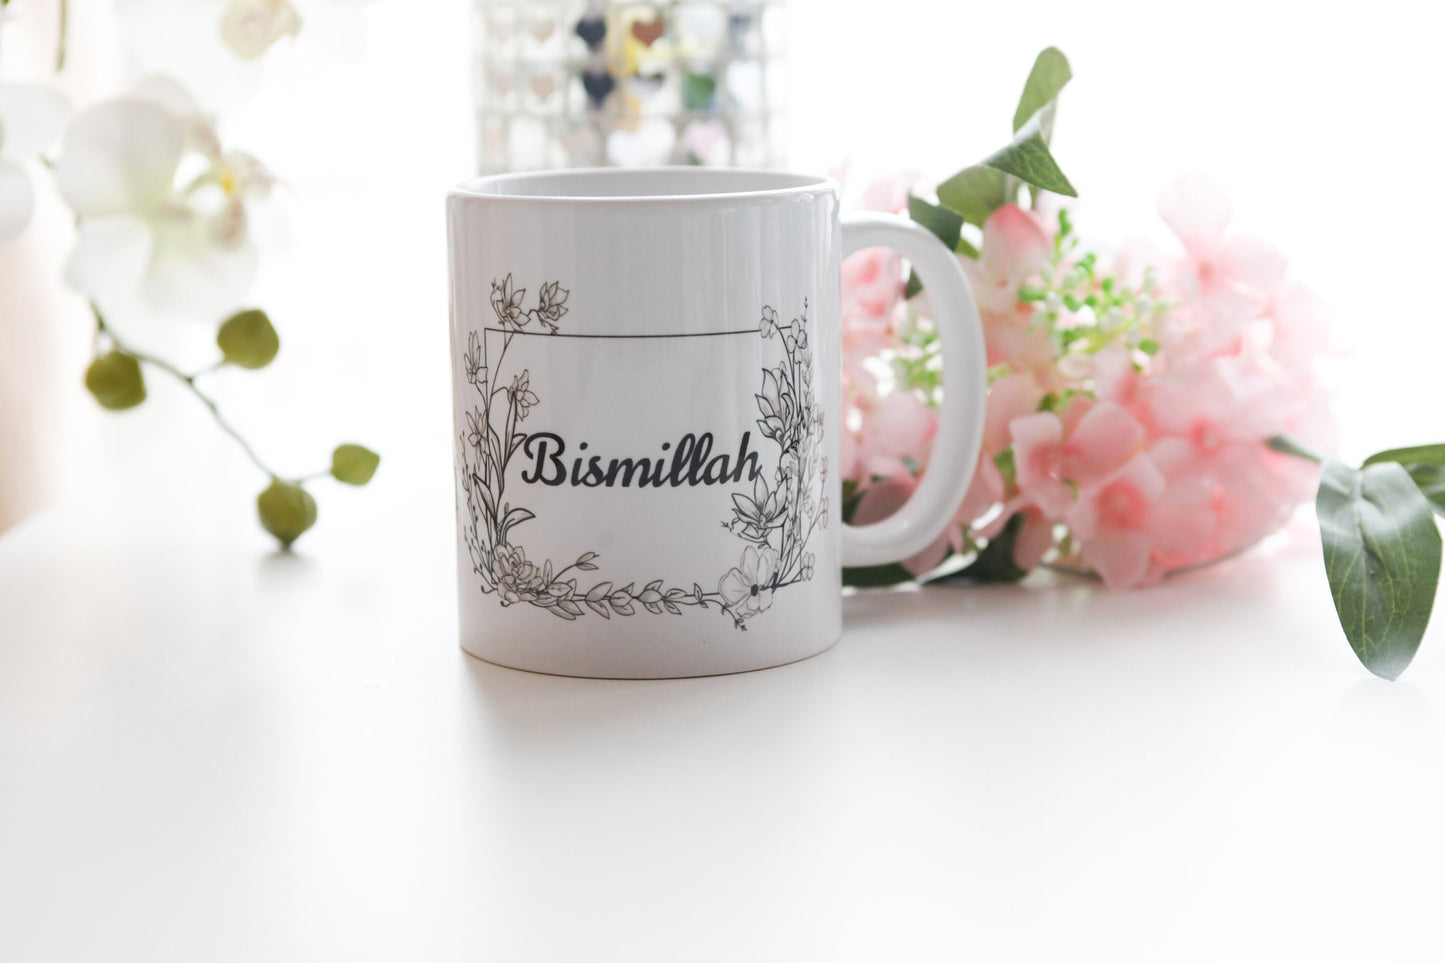 Islamic Mug, Bismillah Mug, Muslim Mug, Eid Mug, Personalised Mug, Arabic Mug, Muslimah Mug, Arabian Mug, Ramadan Mug, Coffee Tea Mug